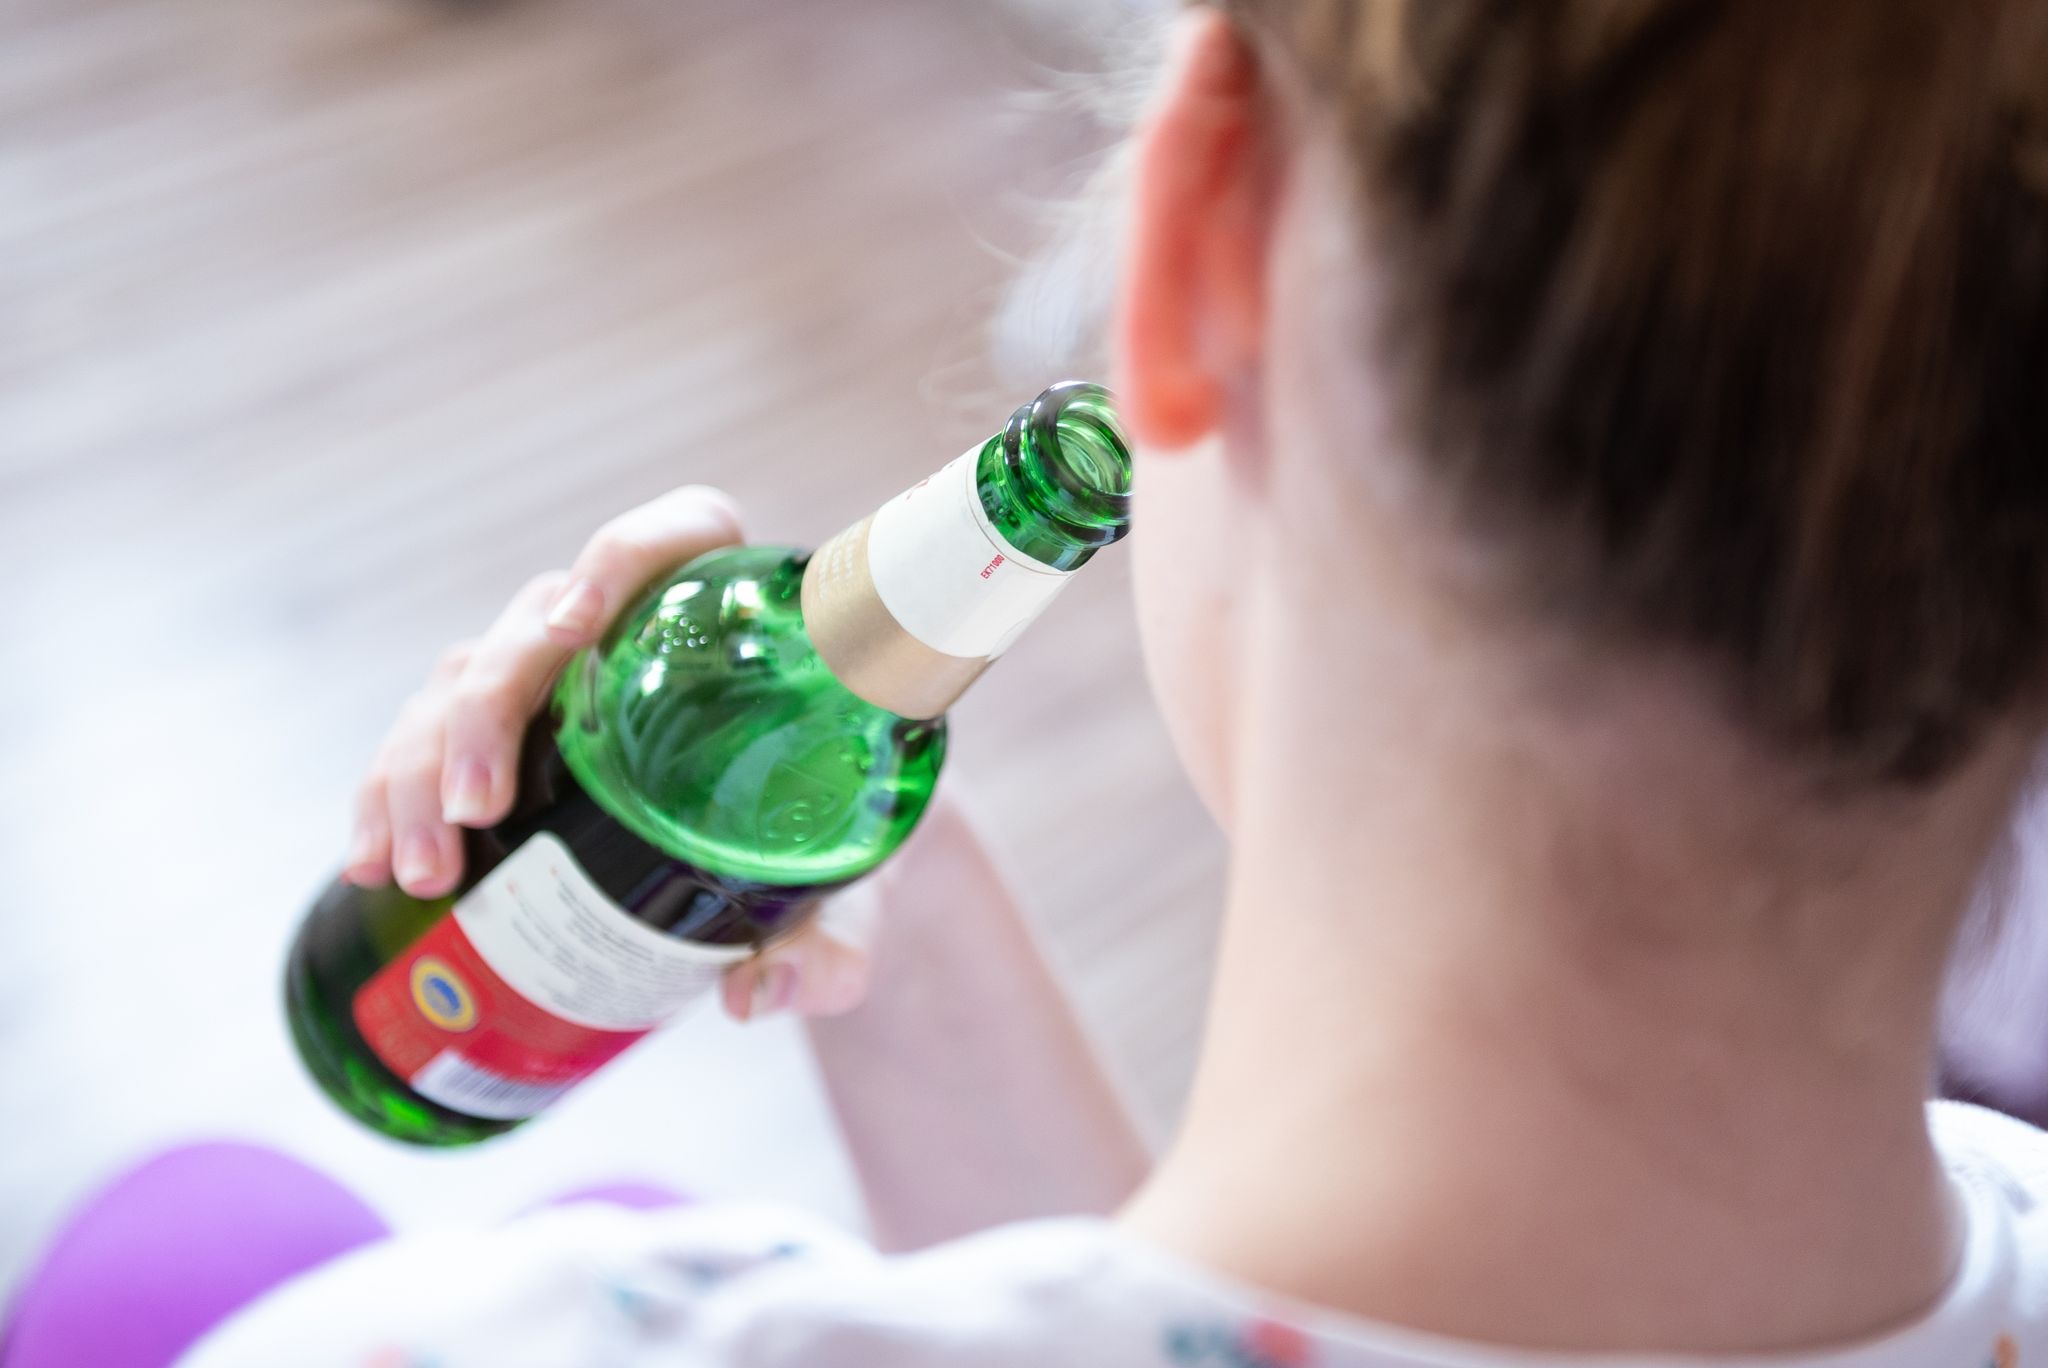 «Wir haben aber ein dickes Problem beim Alkoholkonsum», sagt der Suchtbeauftragte der Bundesregierung, Burkhard Blienert.